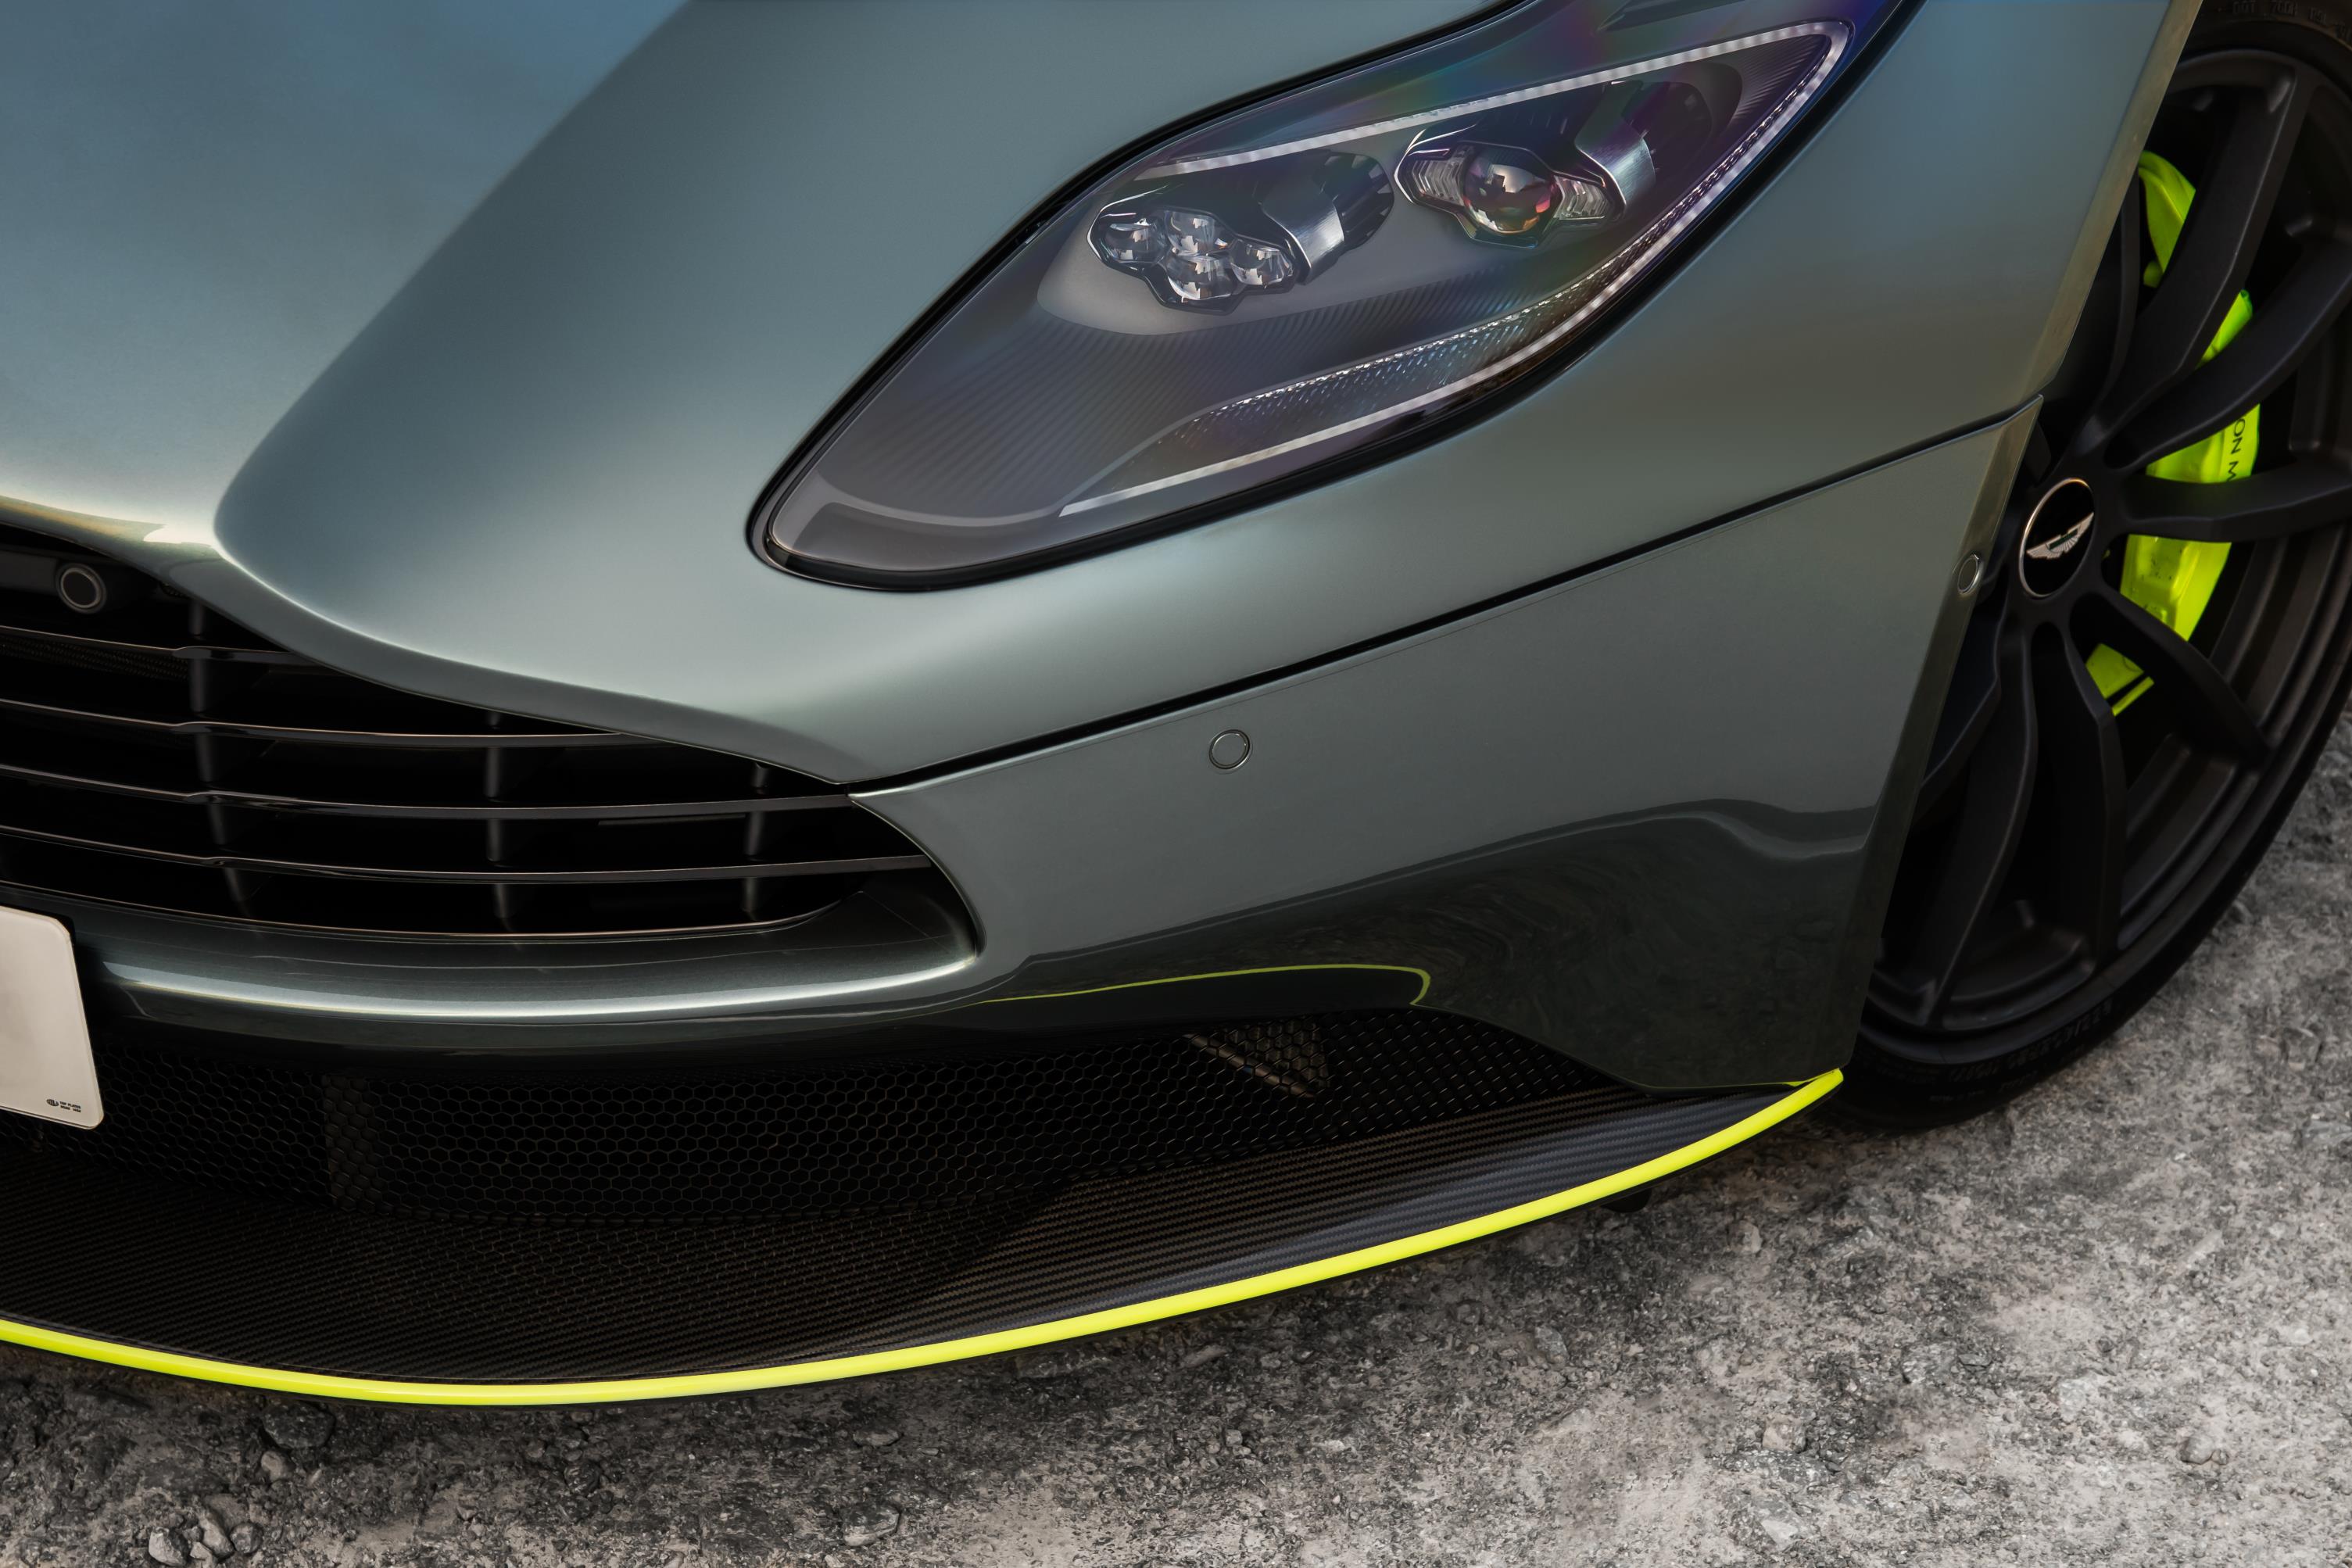 Президент и главный исполнительный директор Aston Martin д-р Энди Палмер сказал: «С момента своего первоначального запуска в 2016 году диапазон DB11 созревал быстро и разумно, продавая около 4200 экземпляров V12 в этот период. С уникальным V8 Coupe и